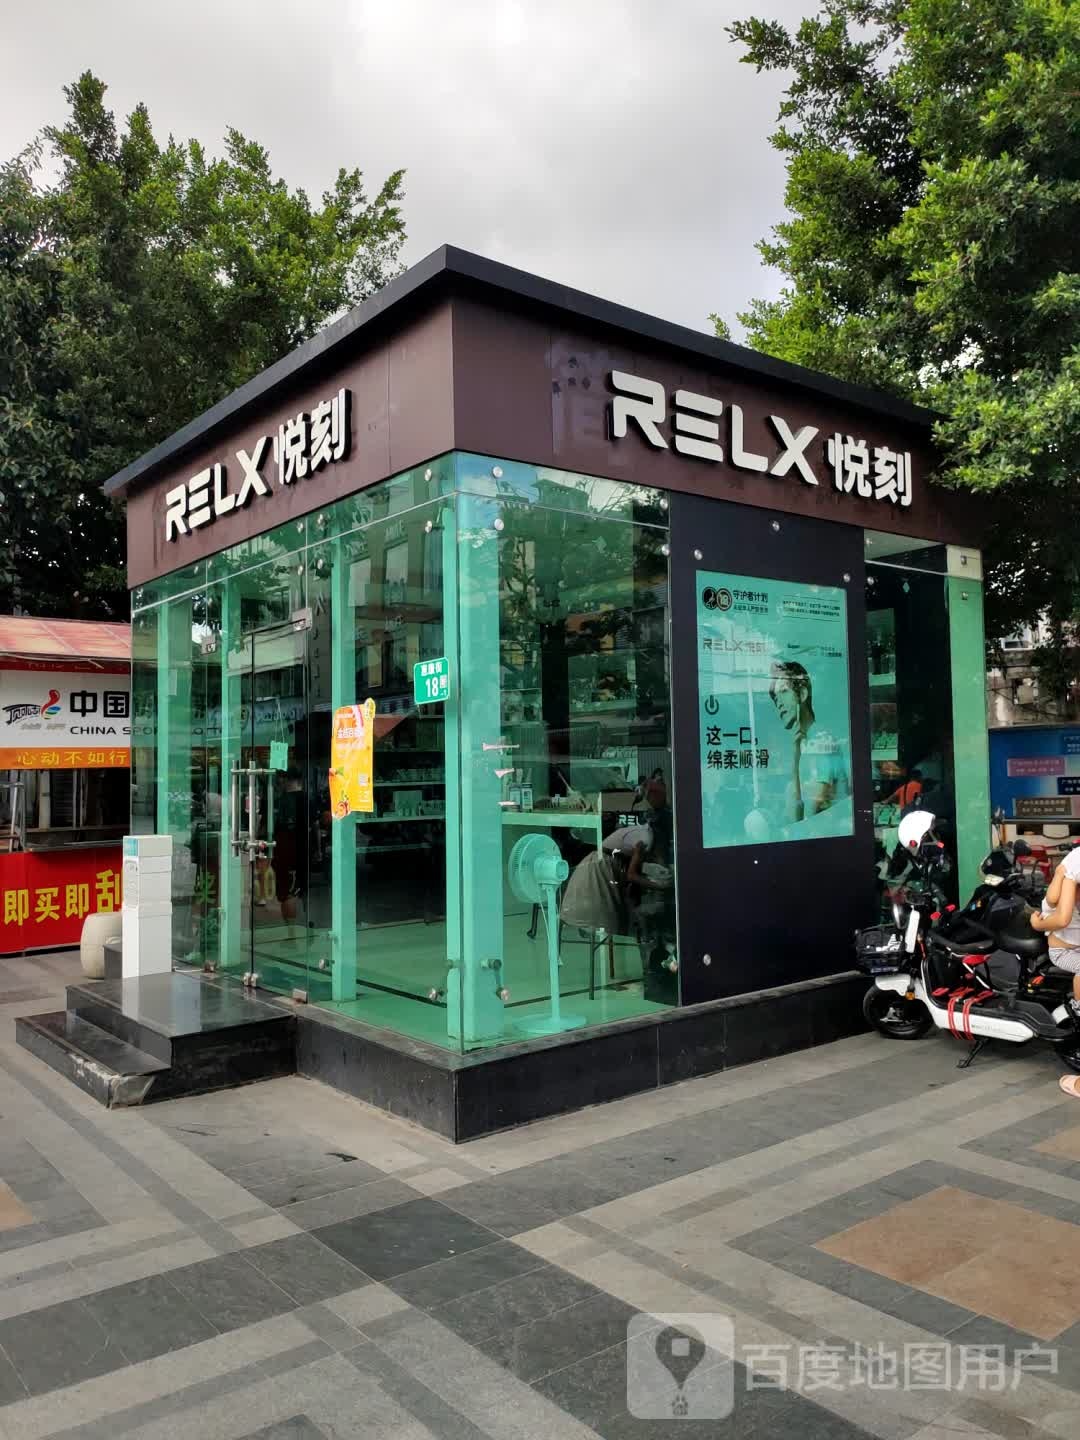 relx悦刻电子烟南沙金洲总店